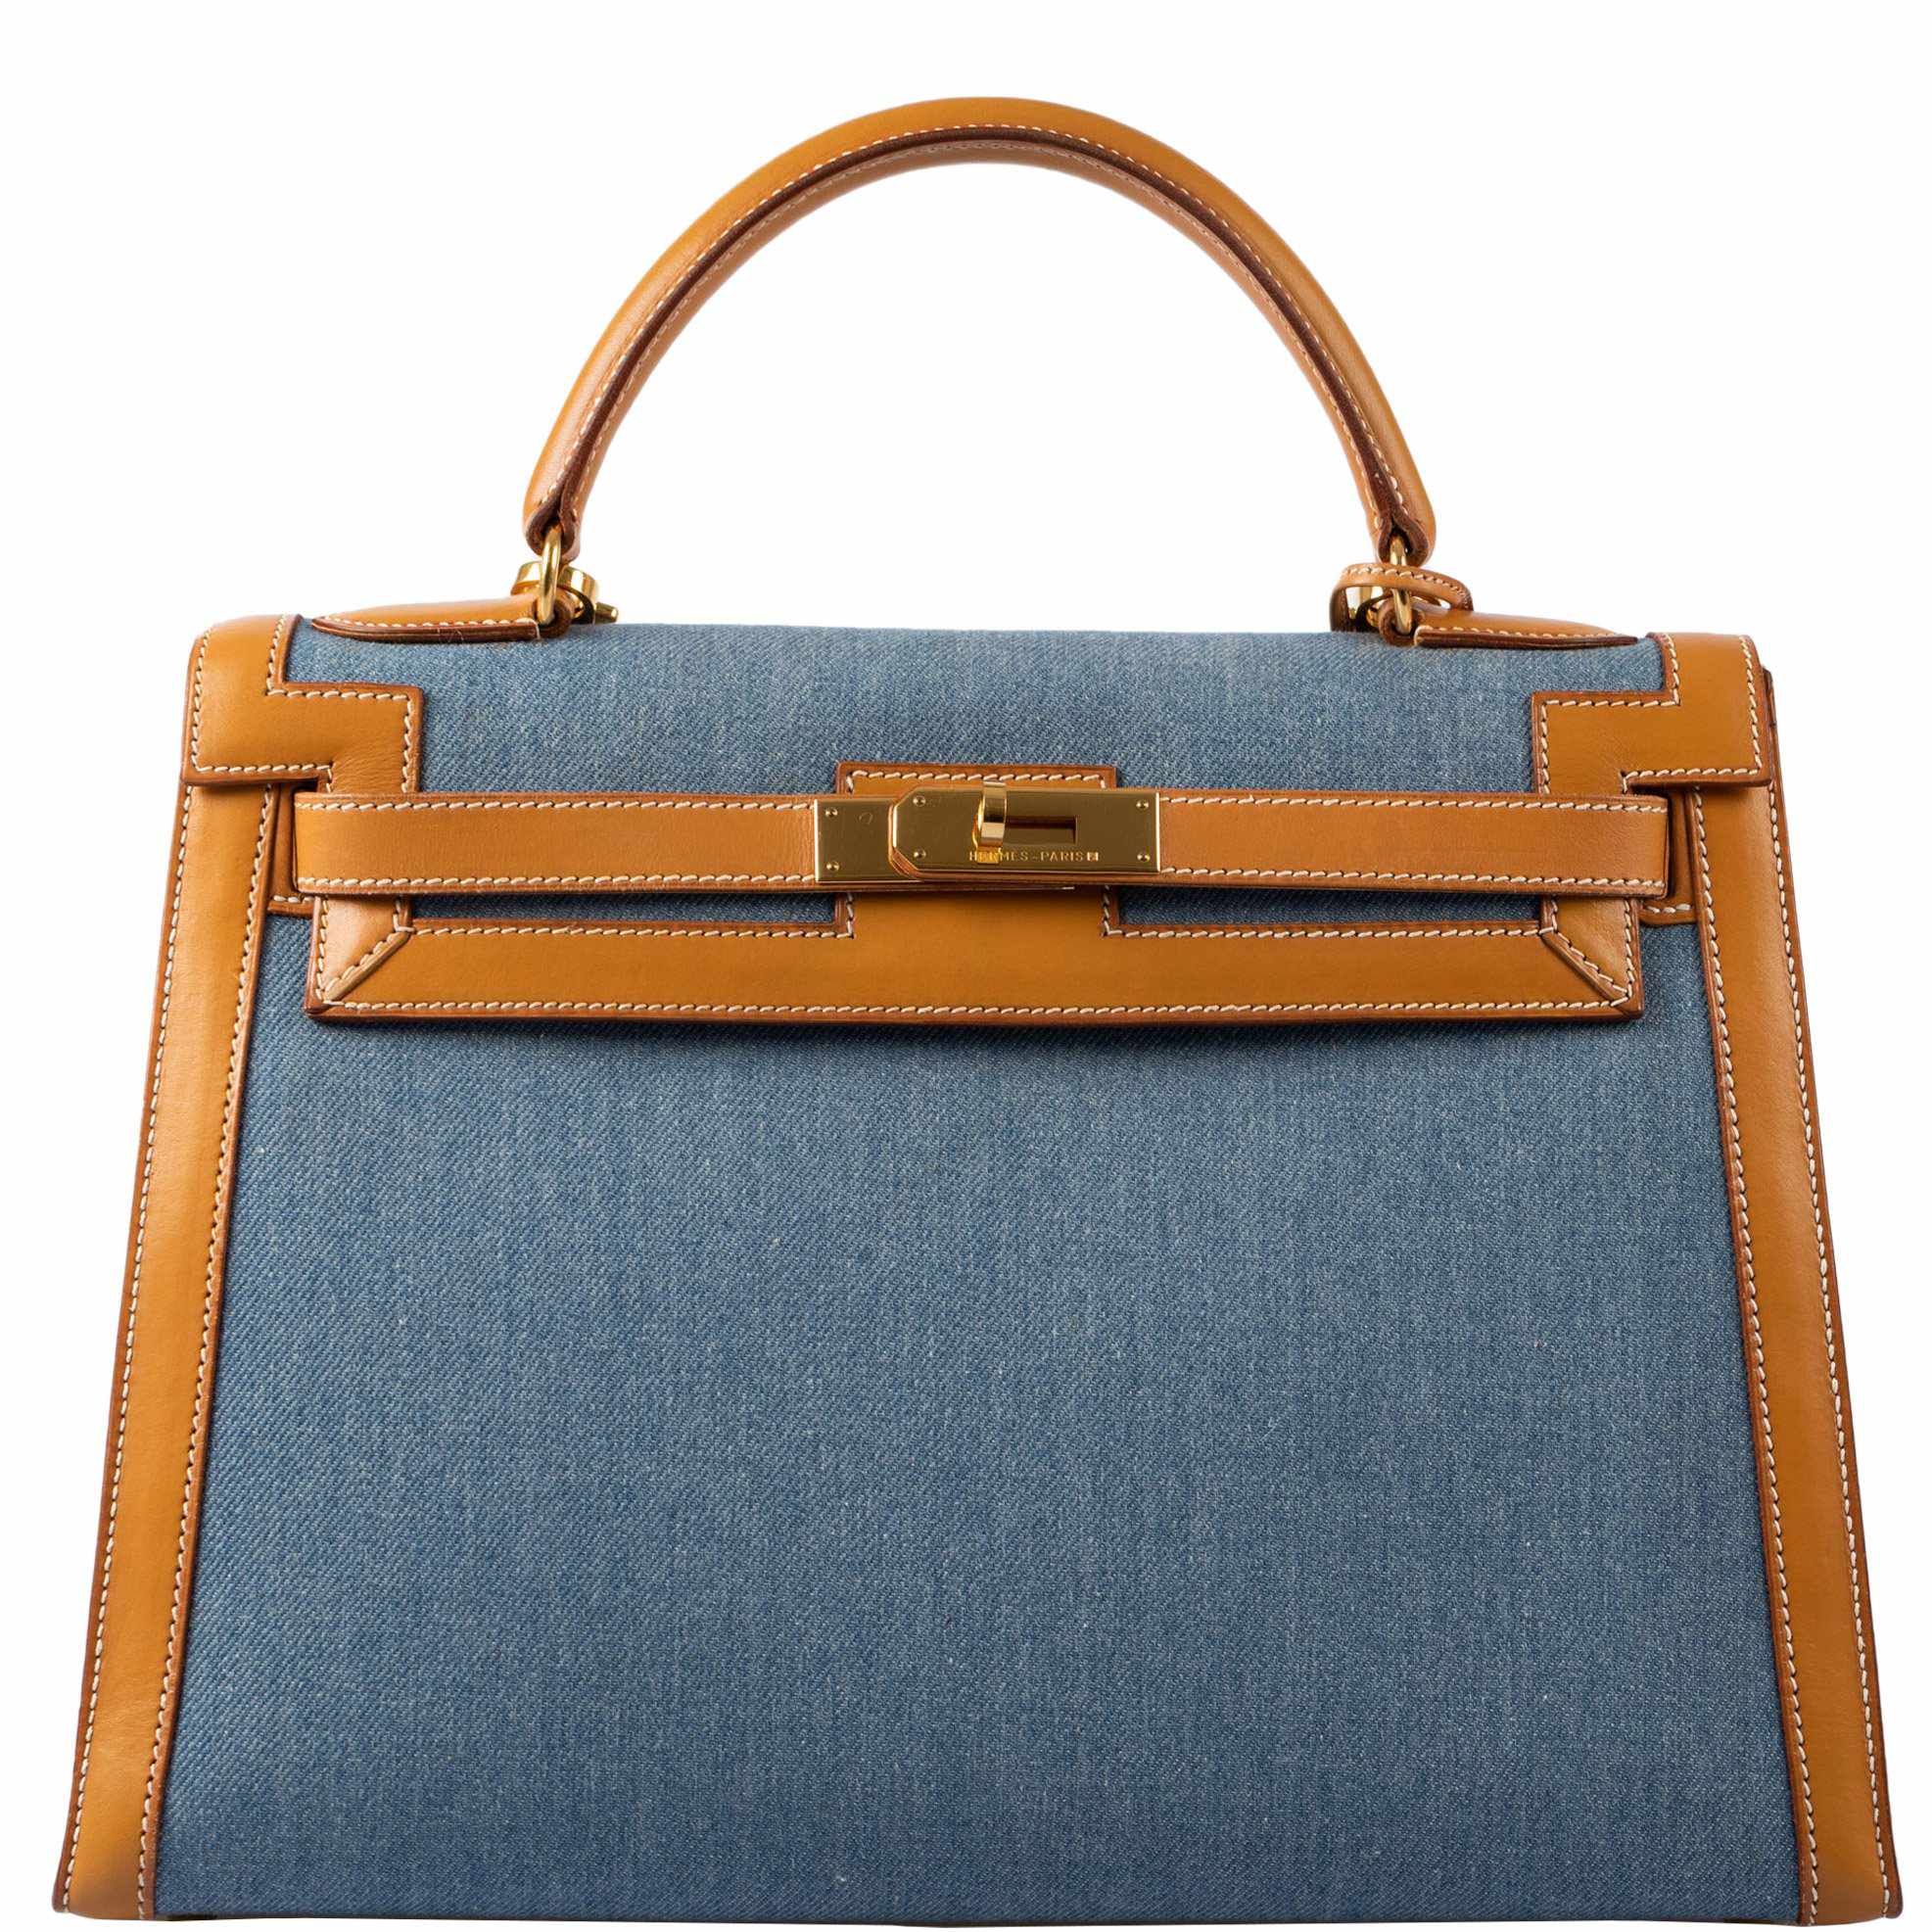 Hermes Kelly 25cm Bag Togo Calfskin Leather Gold Hardware, Blue